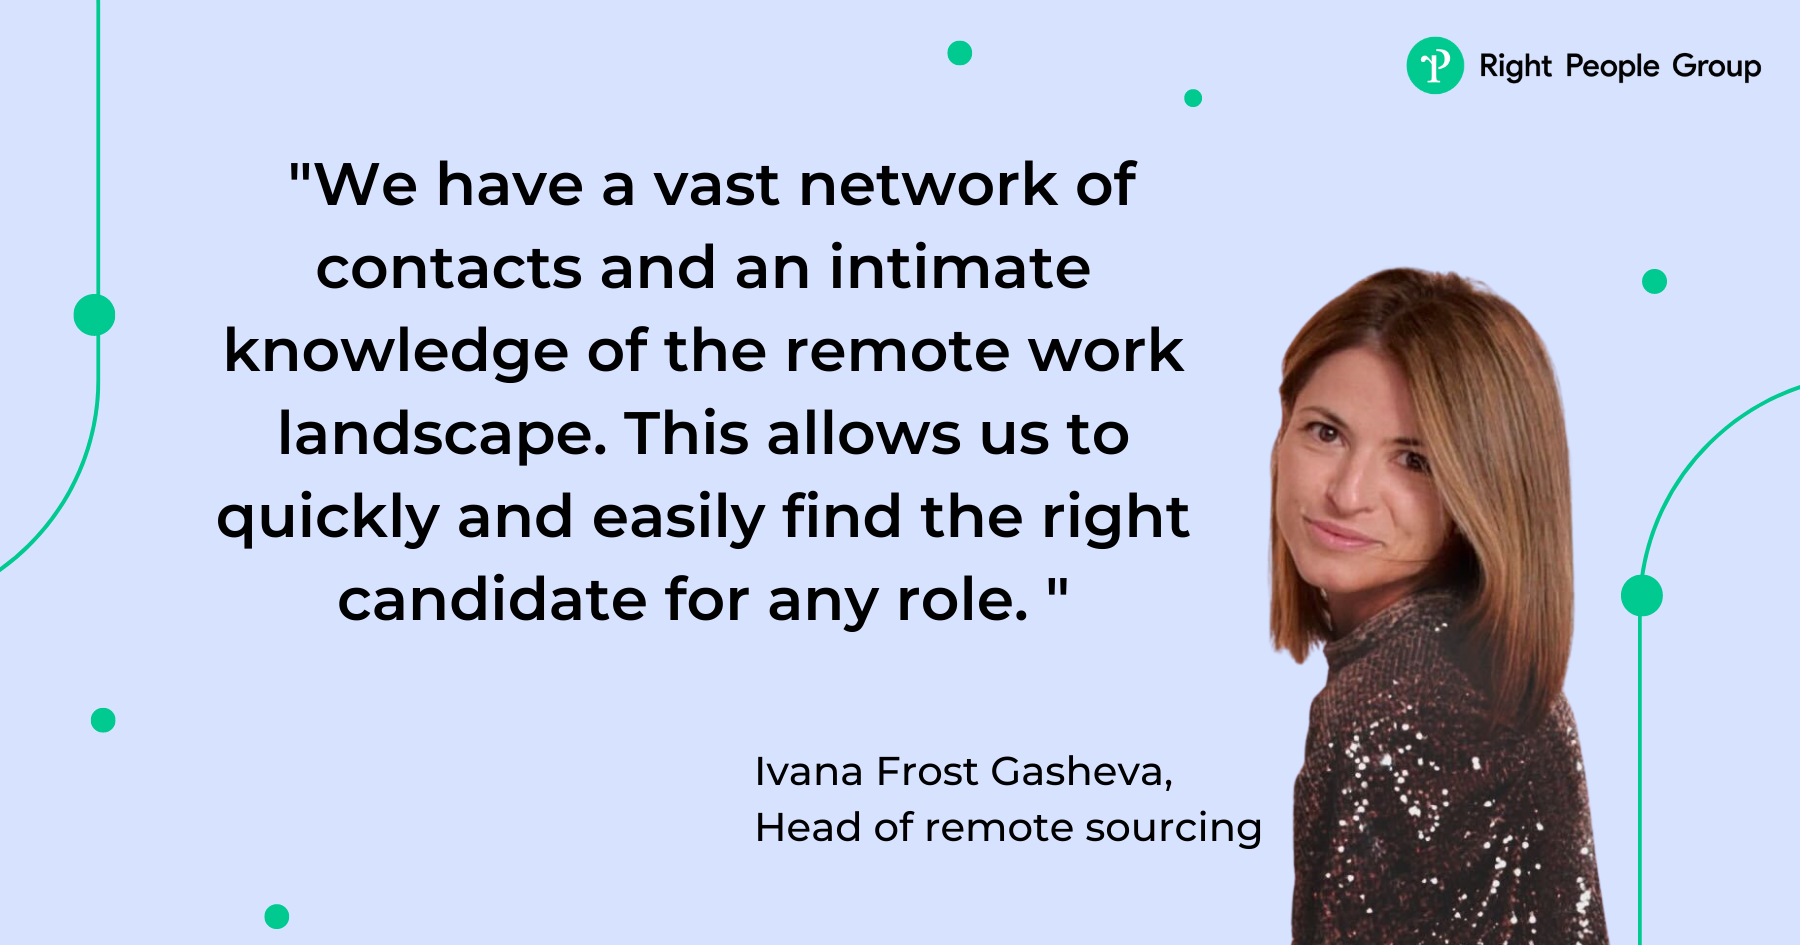 Lernen Sie Ivana Frost Gasheva kennen, unsere neu ernannte Leiterin für Remote Sourcing